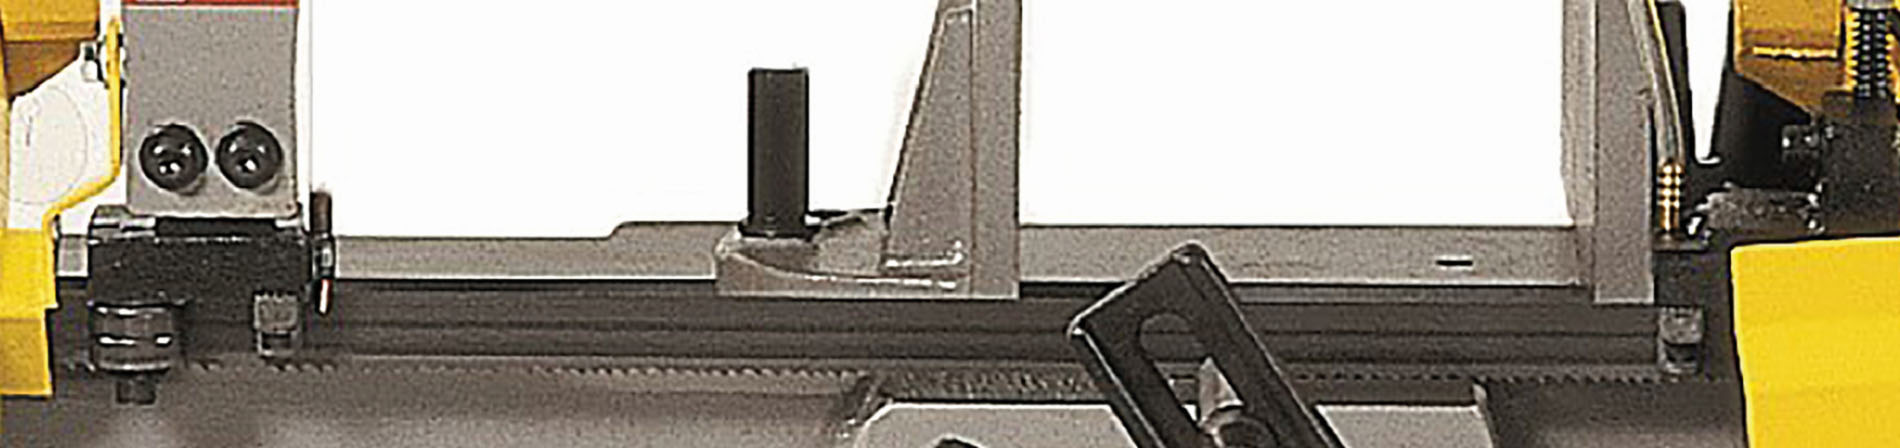 Sägeband 3.035 x 27 x 0,9 mm 6-10 ZpZ Bi-Metall